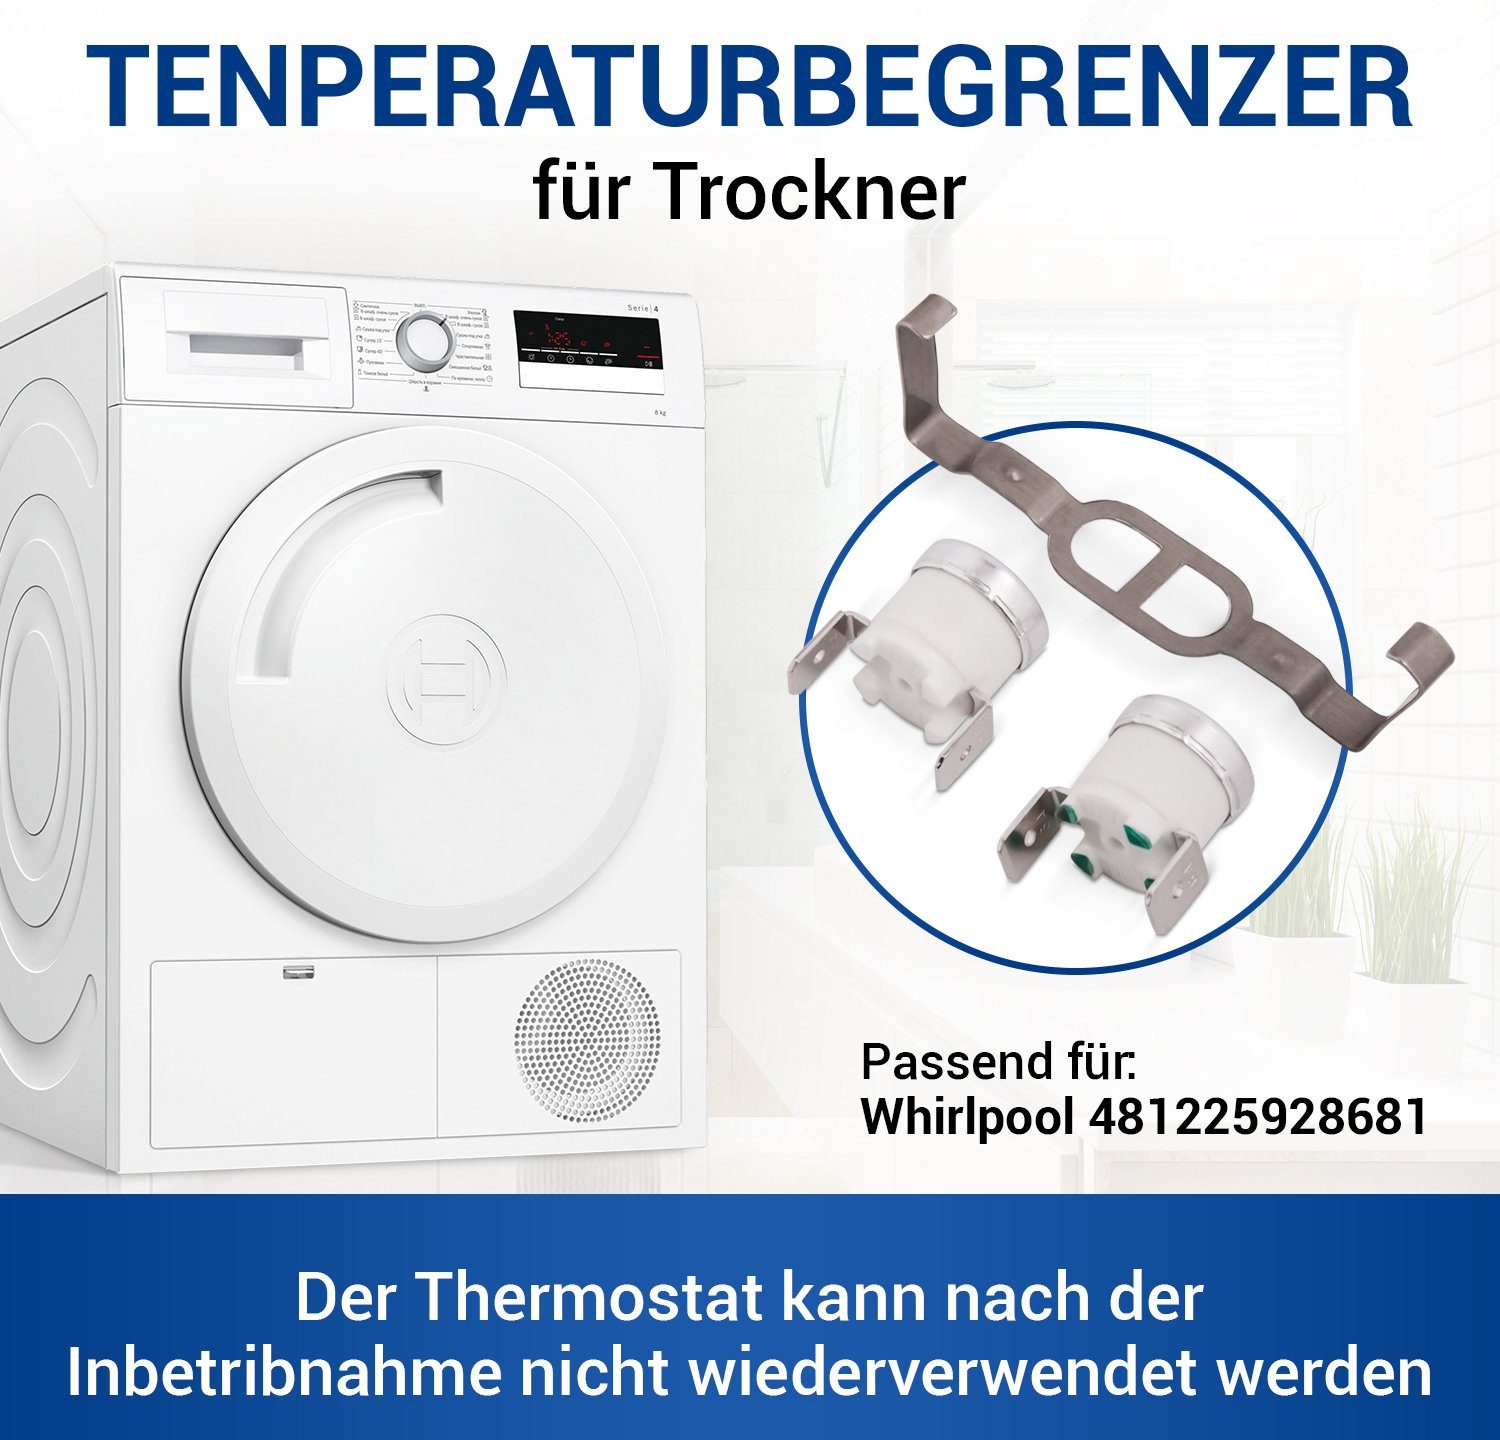 Thermodetektor VIOKS Temperaturbegrenzerset Thermostaten mit 481225928681, wie für 2 Bügel Trockner Whirlpool